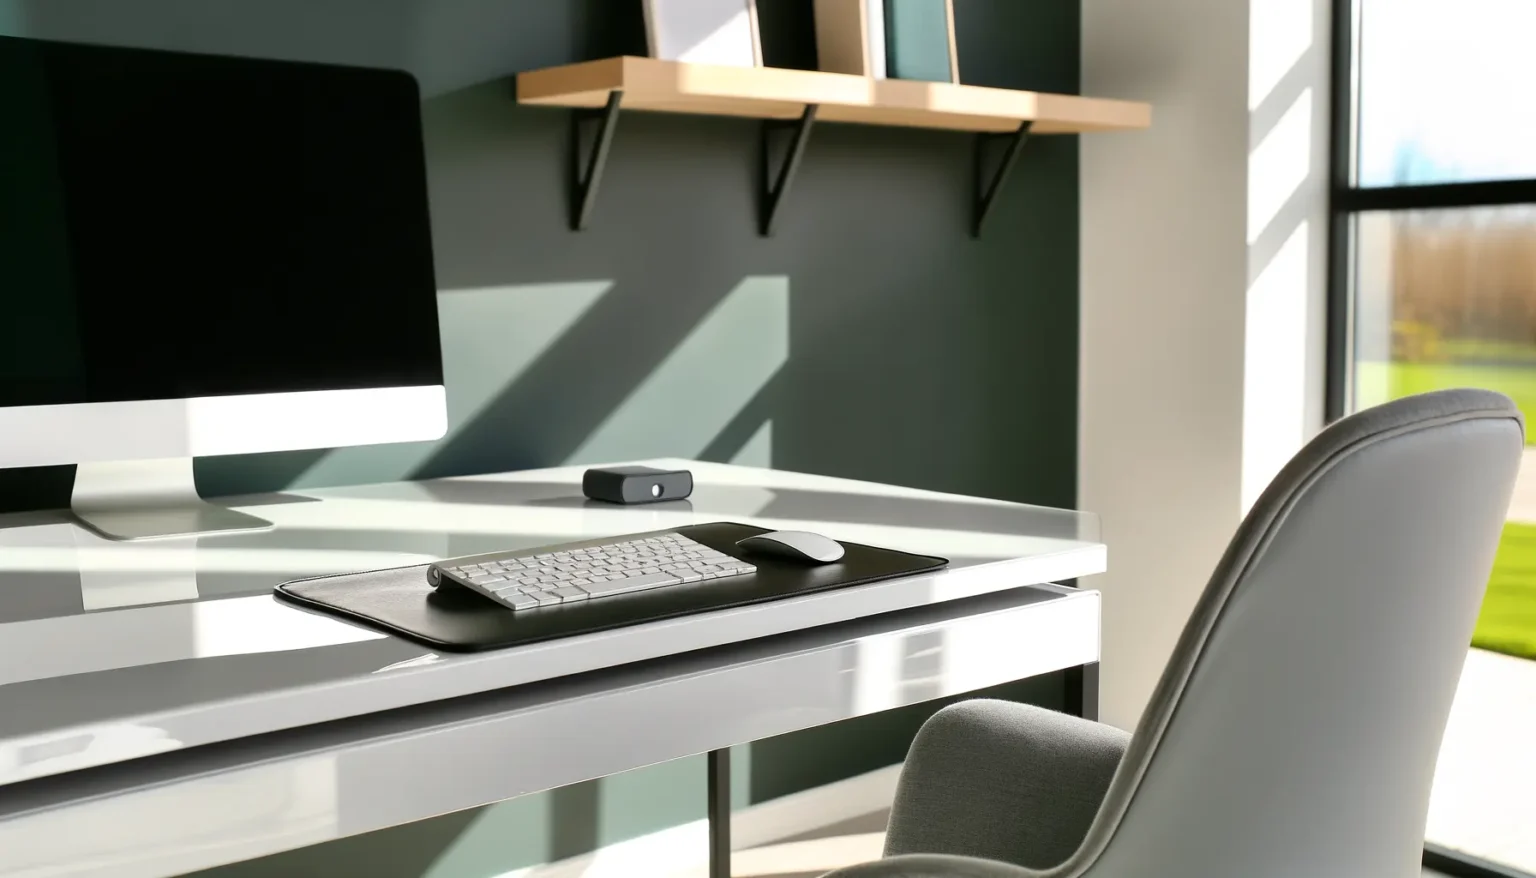 Modern eingerichteter Arbeitsplatz mit einem Desktop-Computer, Tastatur und Maus auf einem weißen Schreibtisch, daneben ein grauer Bürostuhl. Im Hintergrund sind geometrisch gemusterte Wände und ein Fenster mit Blick auf einen grünen Außenbereich.